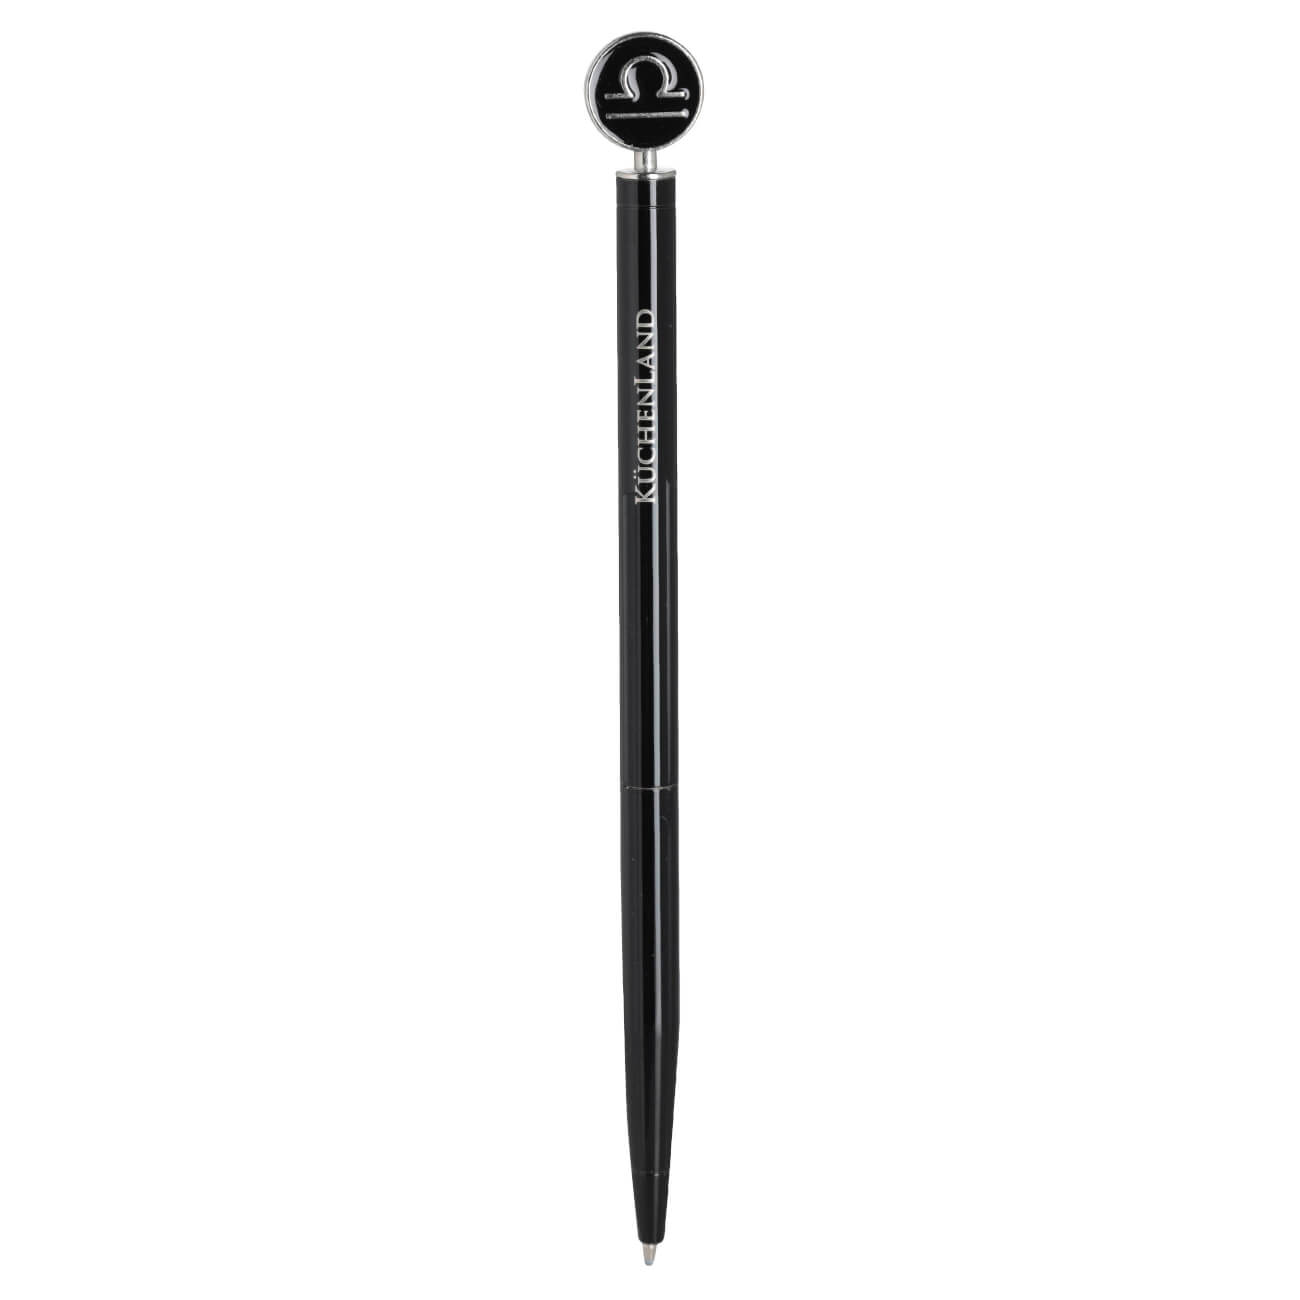 Ручка шариковая, 15 см, с фигуркой, сталь, черно-серебристая, Весы, Zodiac перьевая ручка manzoni